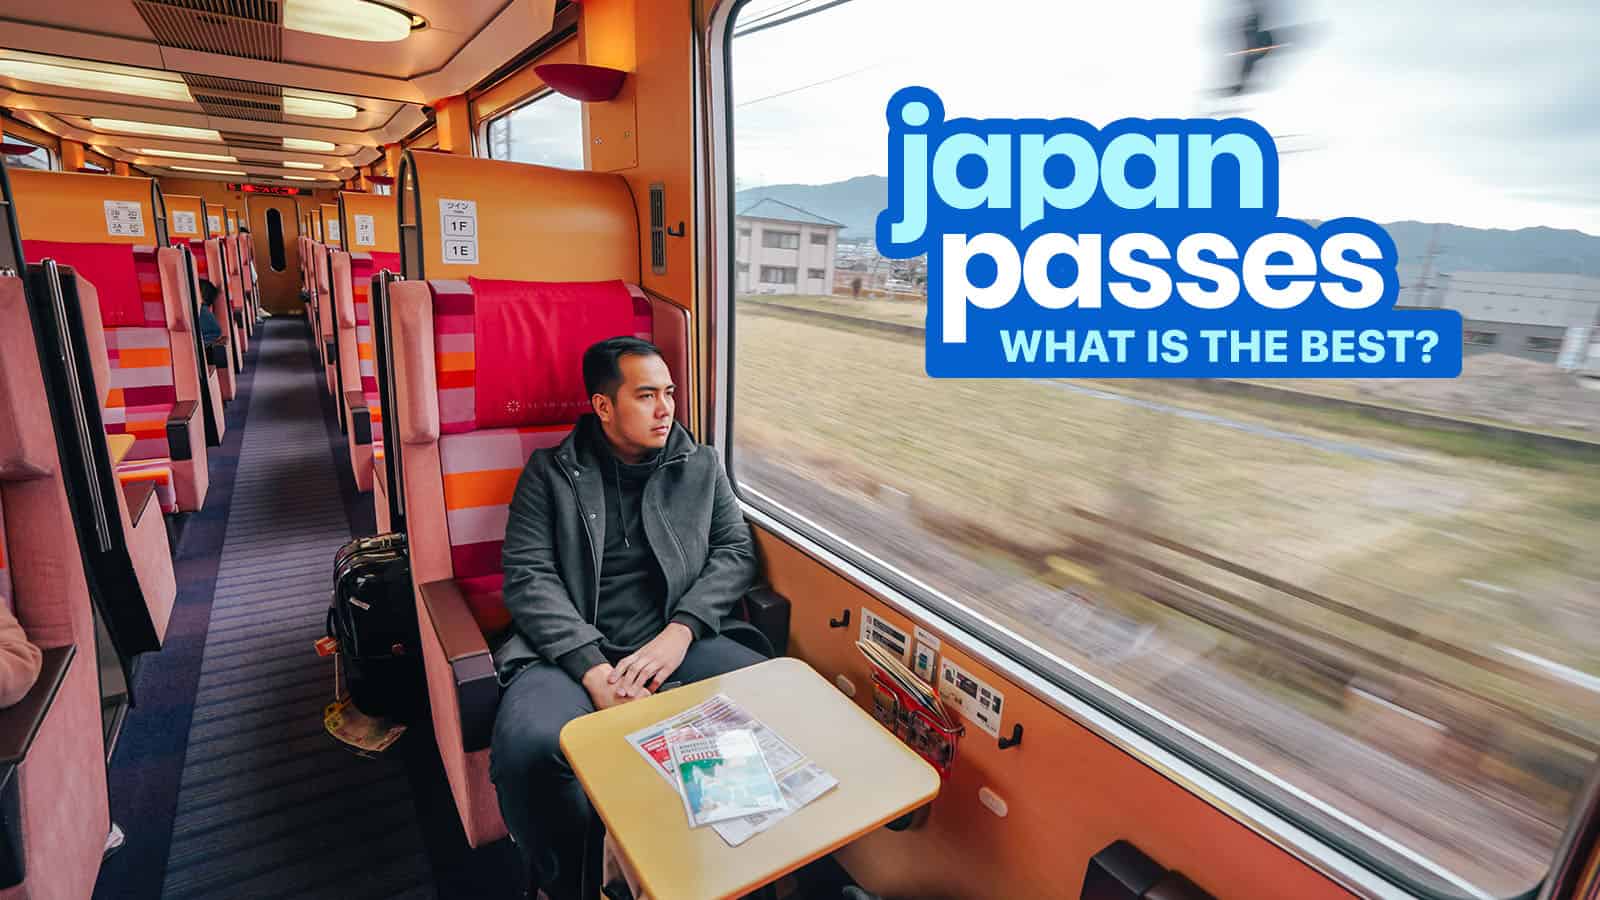 日本火车和公共汽车通行证:什么是最适合你的?